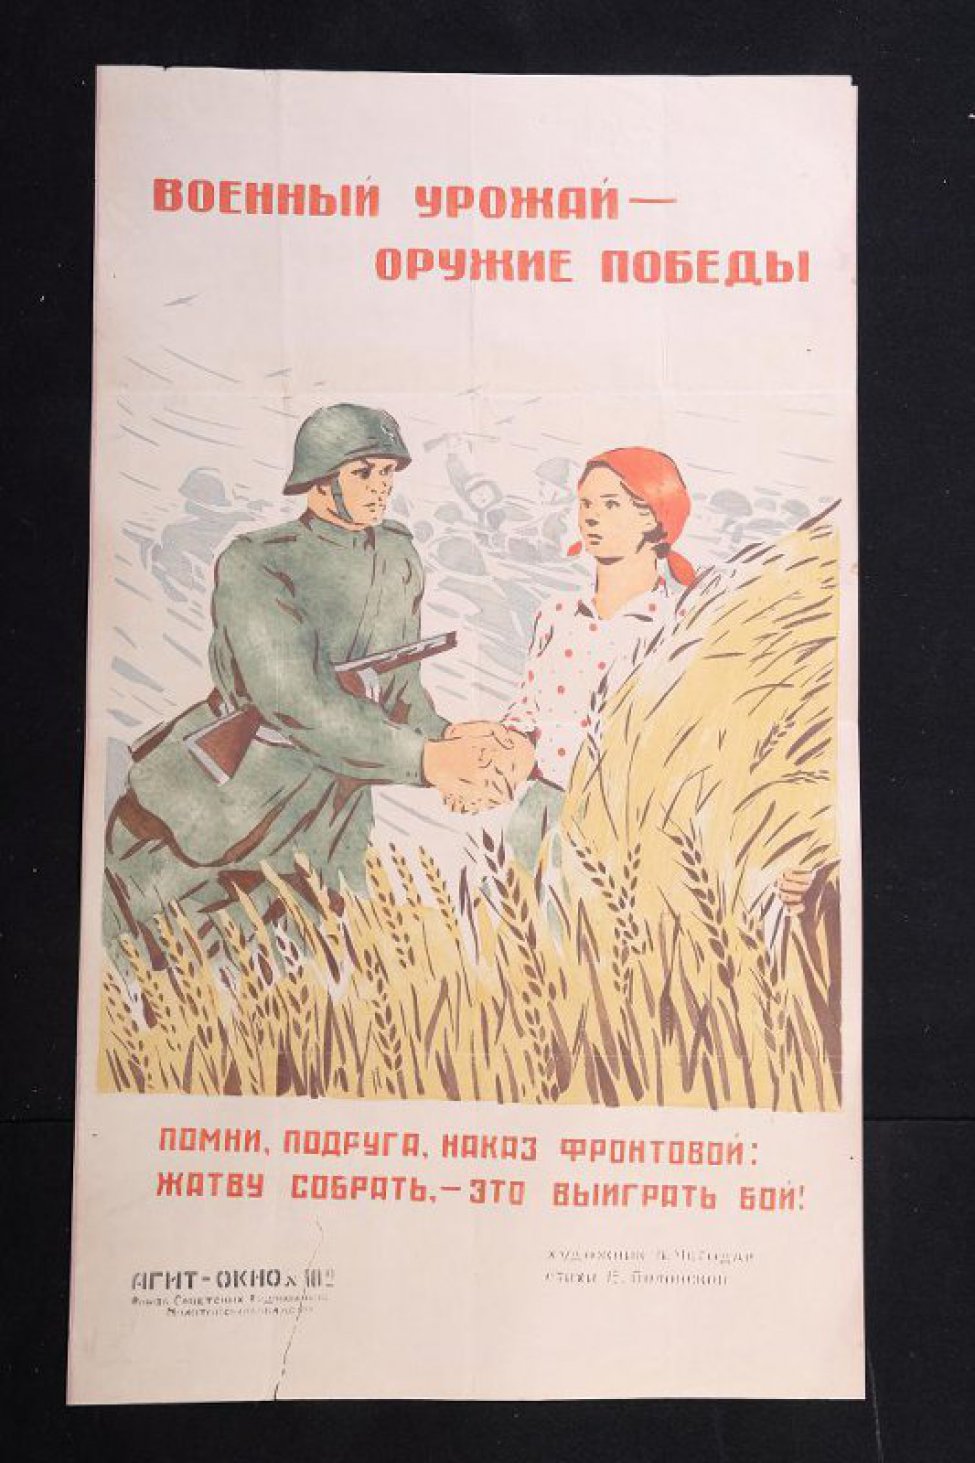 Изображено: советский боец пожимает руку колхознице, которая держит в руке сноп пшеницы, у их ног высится пшеница, текст: " помни подруга, наказ фронтовой: жатву собрать,- это выиграть бой!"